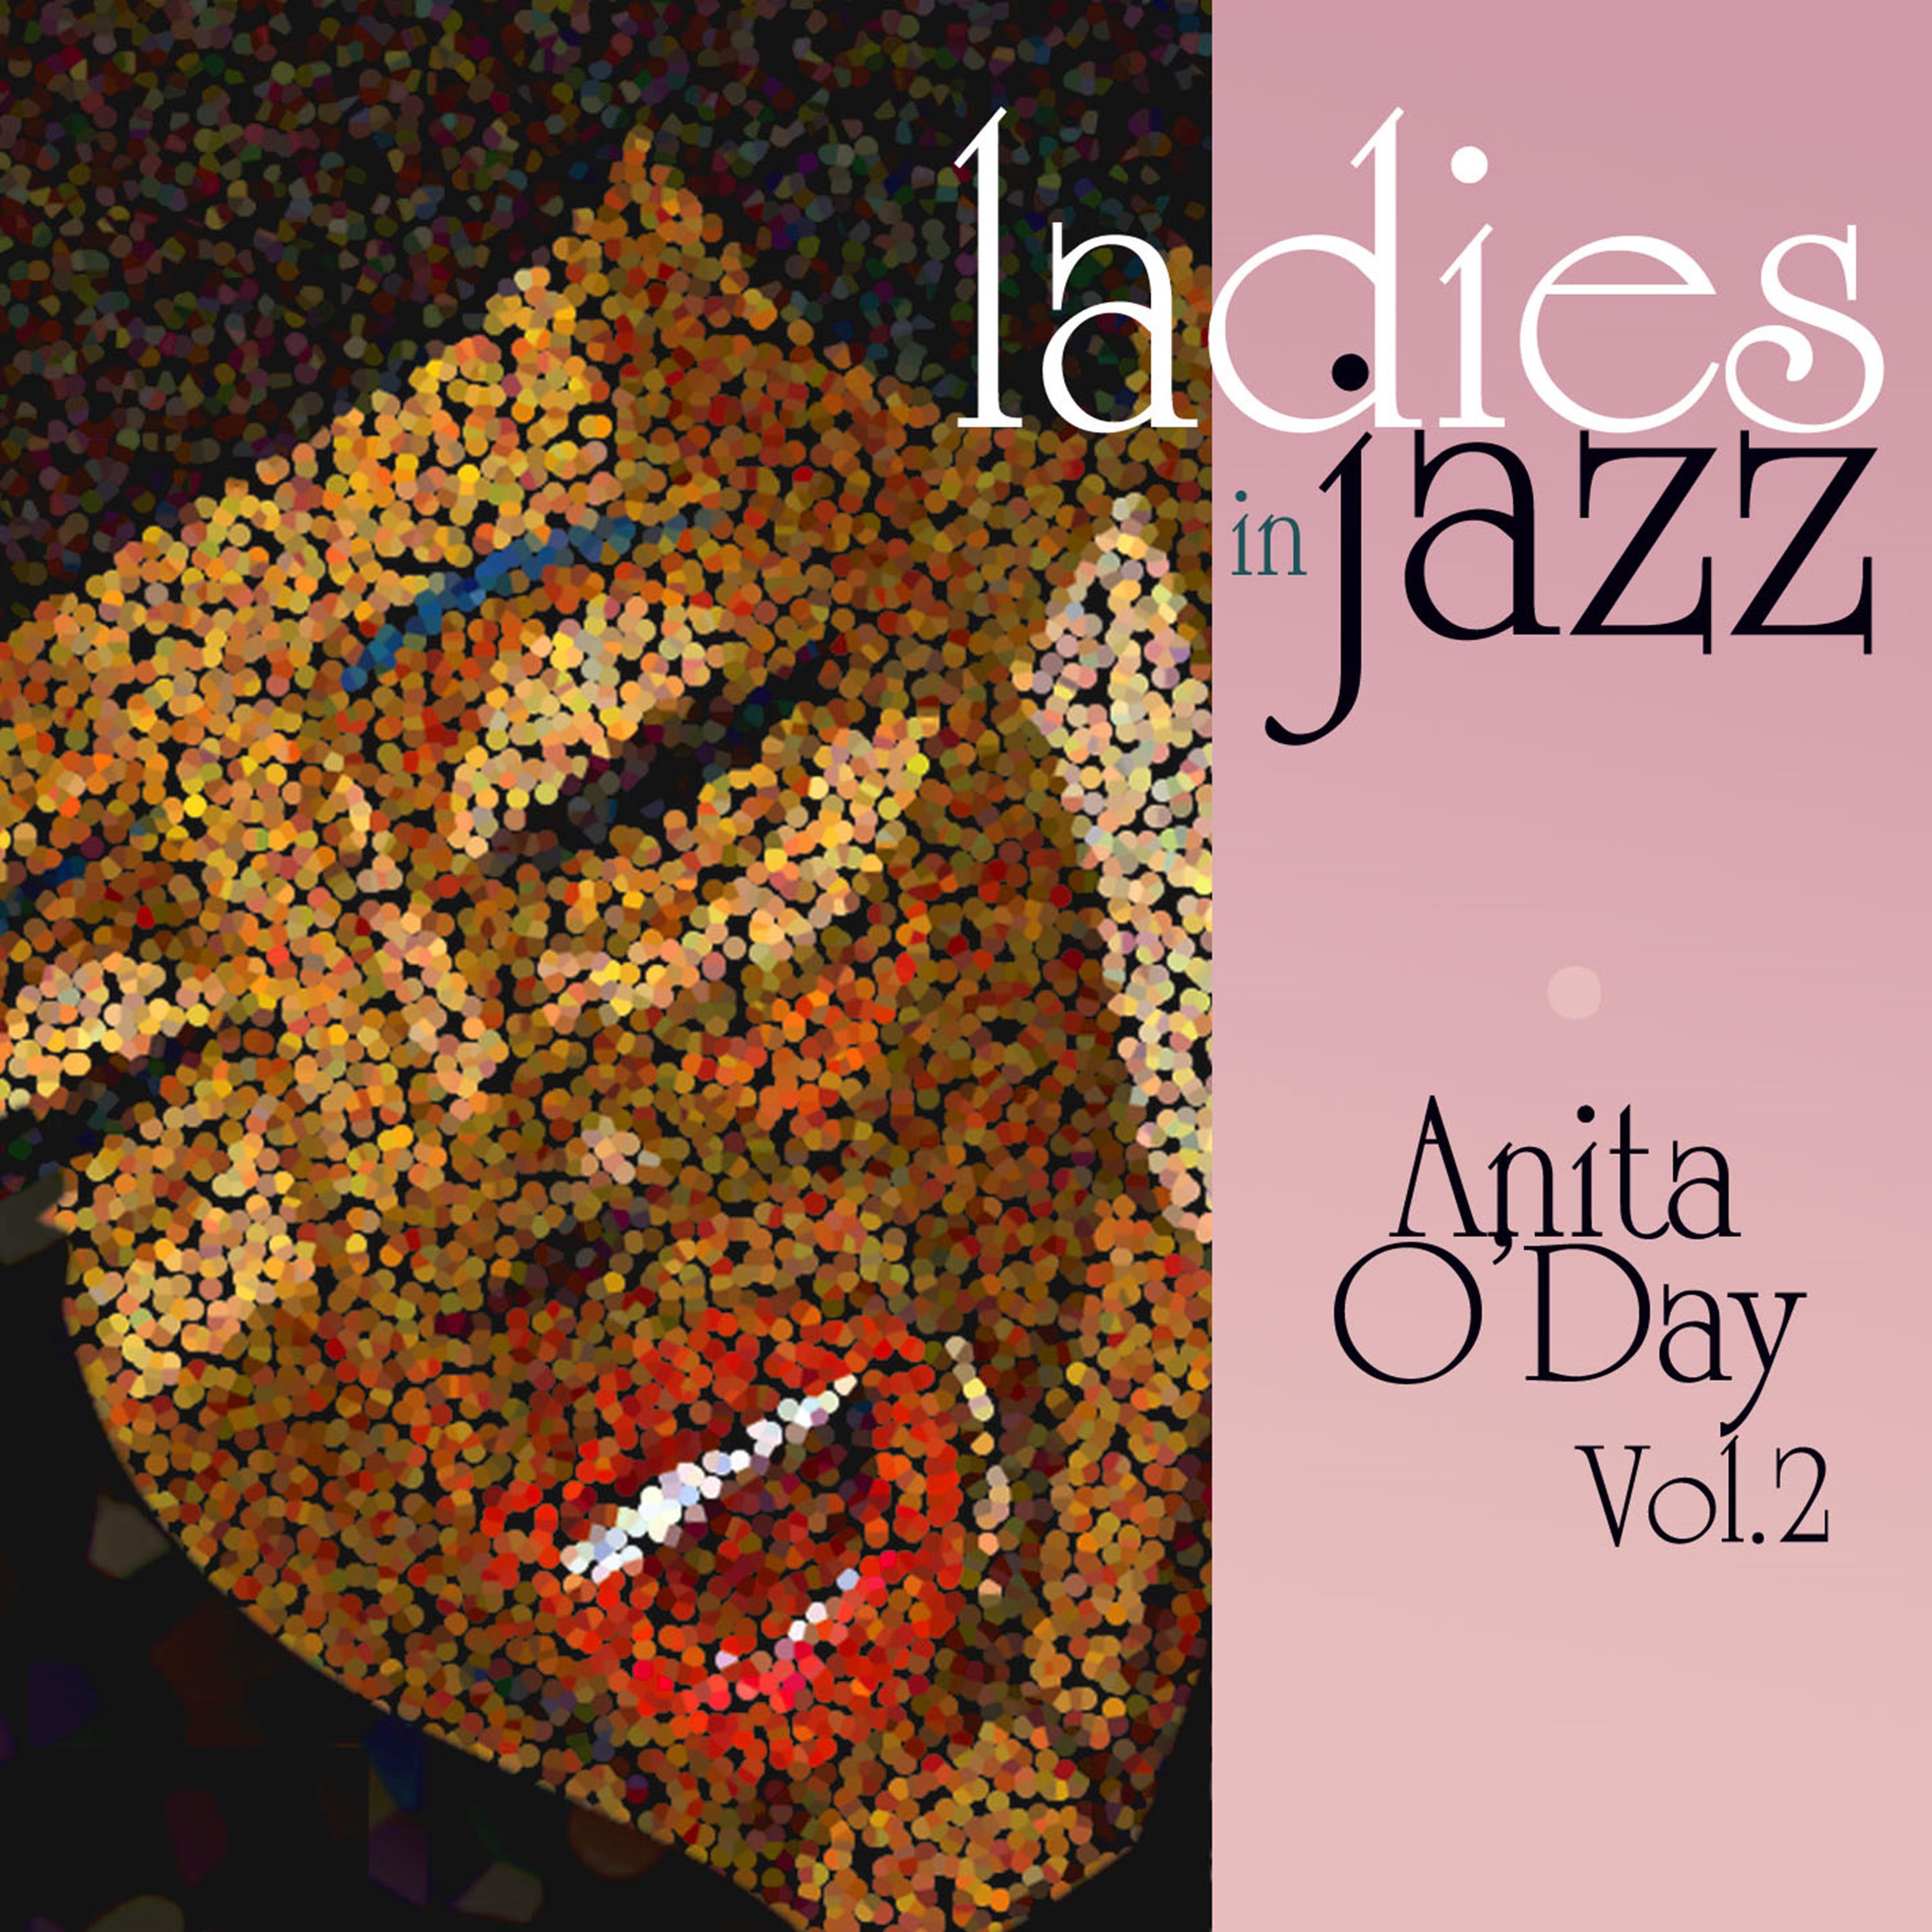 Ladies in Jazz - Anita O'Day, Vol. 2